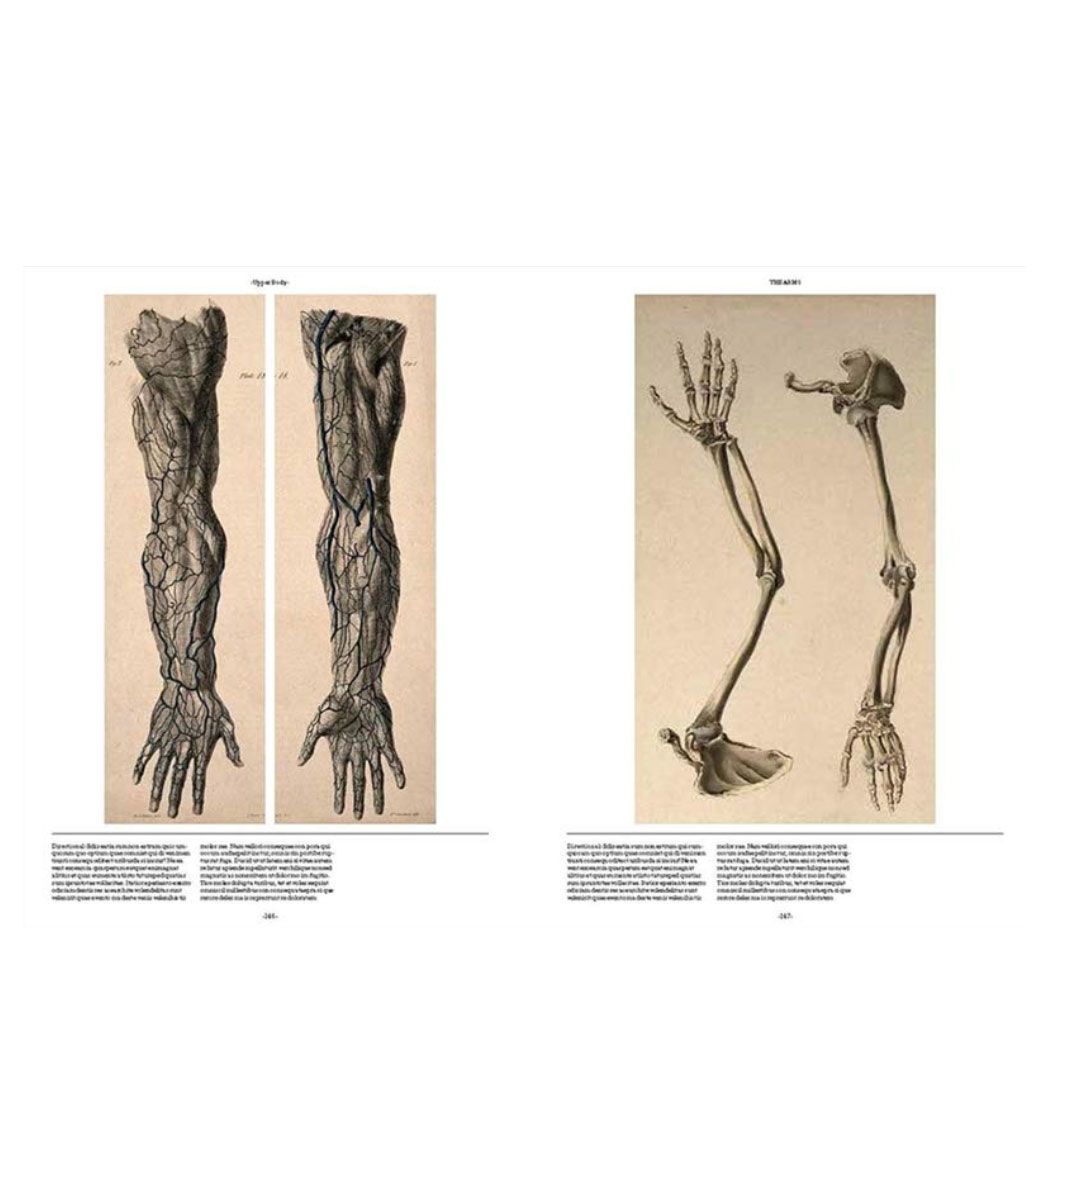 Anatomica, el arte exquisito e inquietante de la anatomía humana